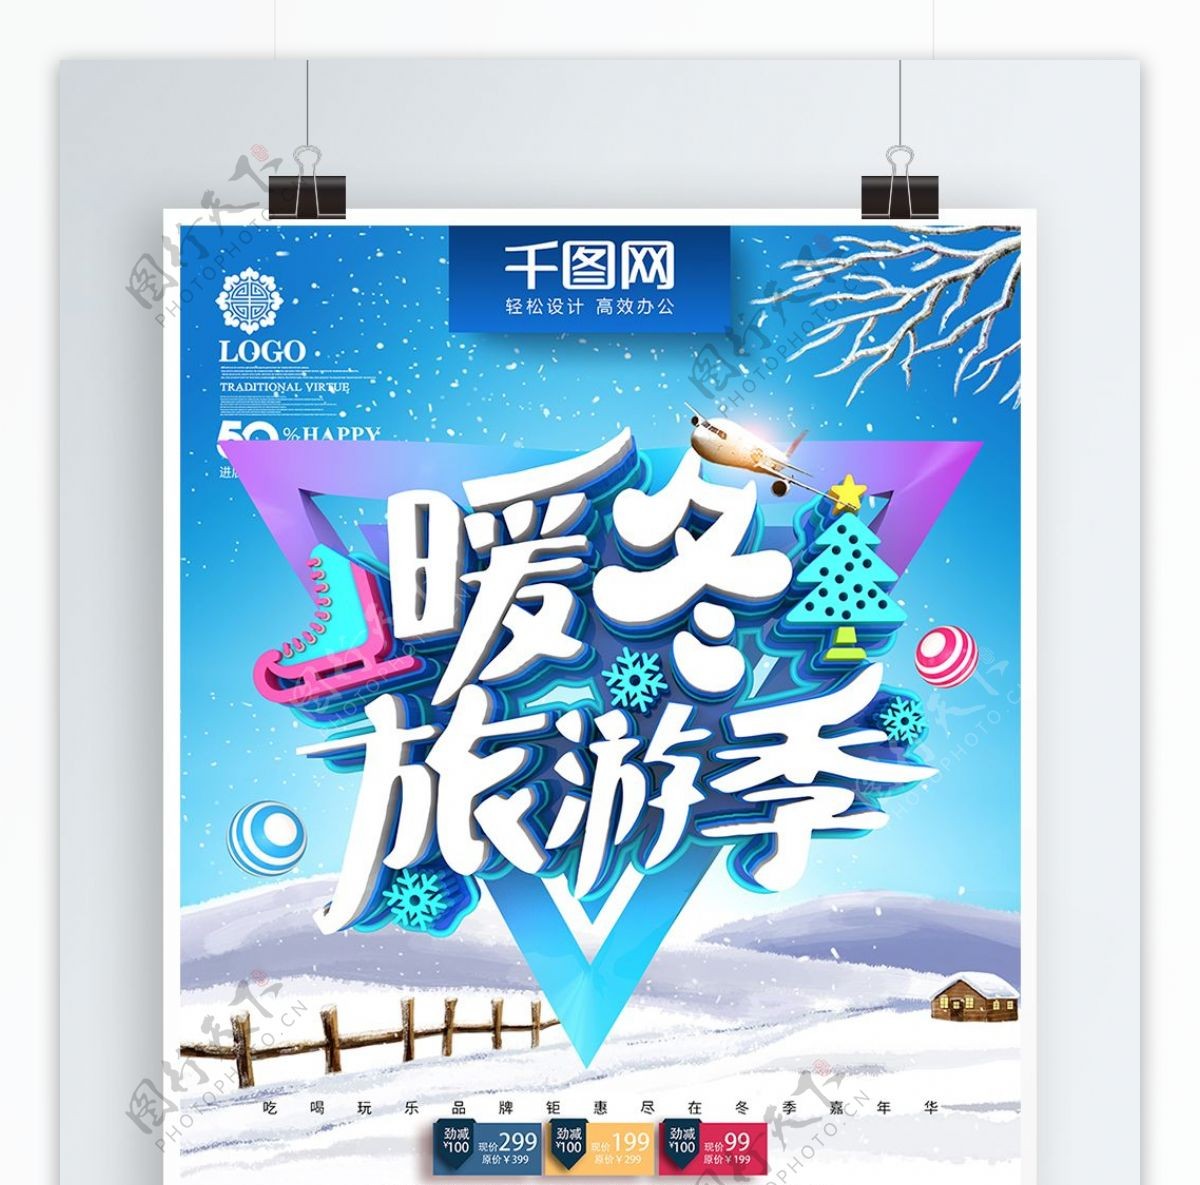 C4D创意时尚立体暖冬旅行季冬季旅游海报